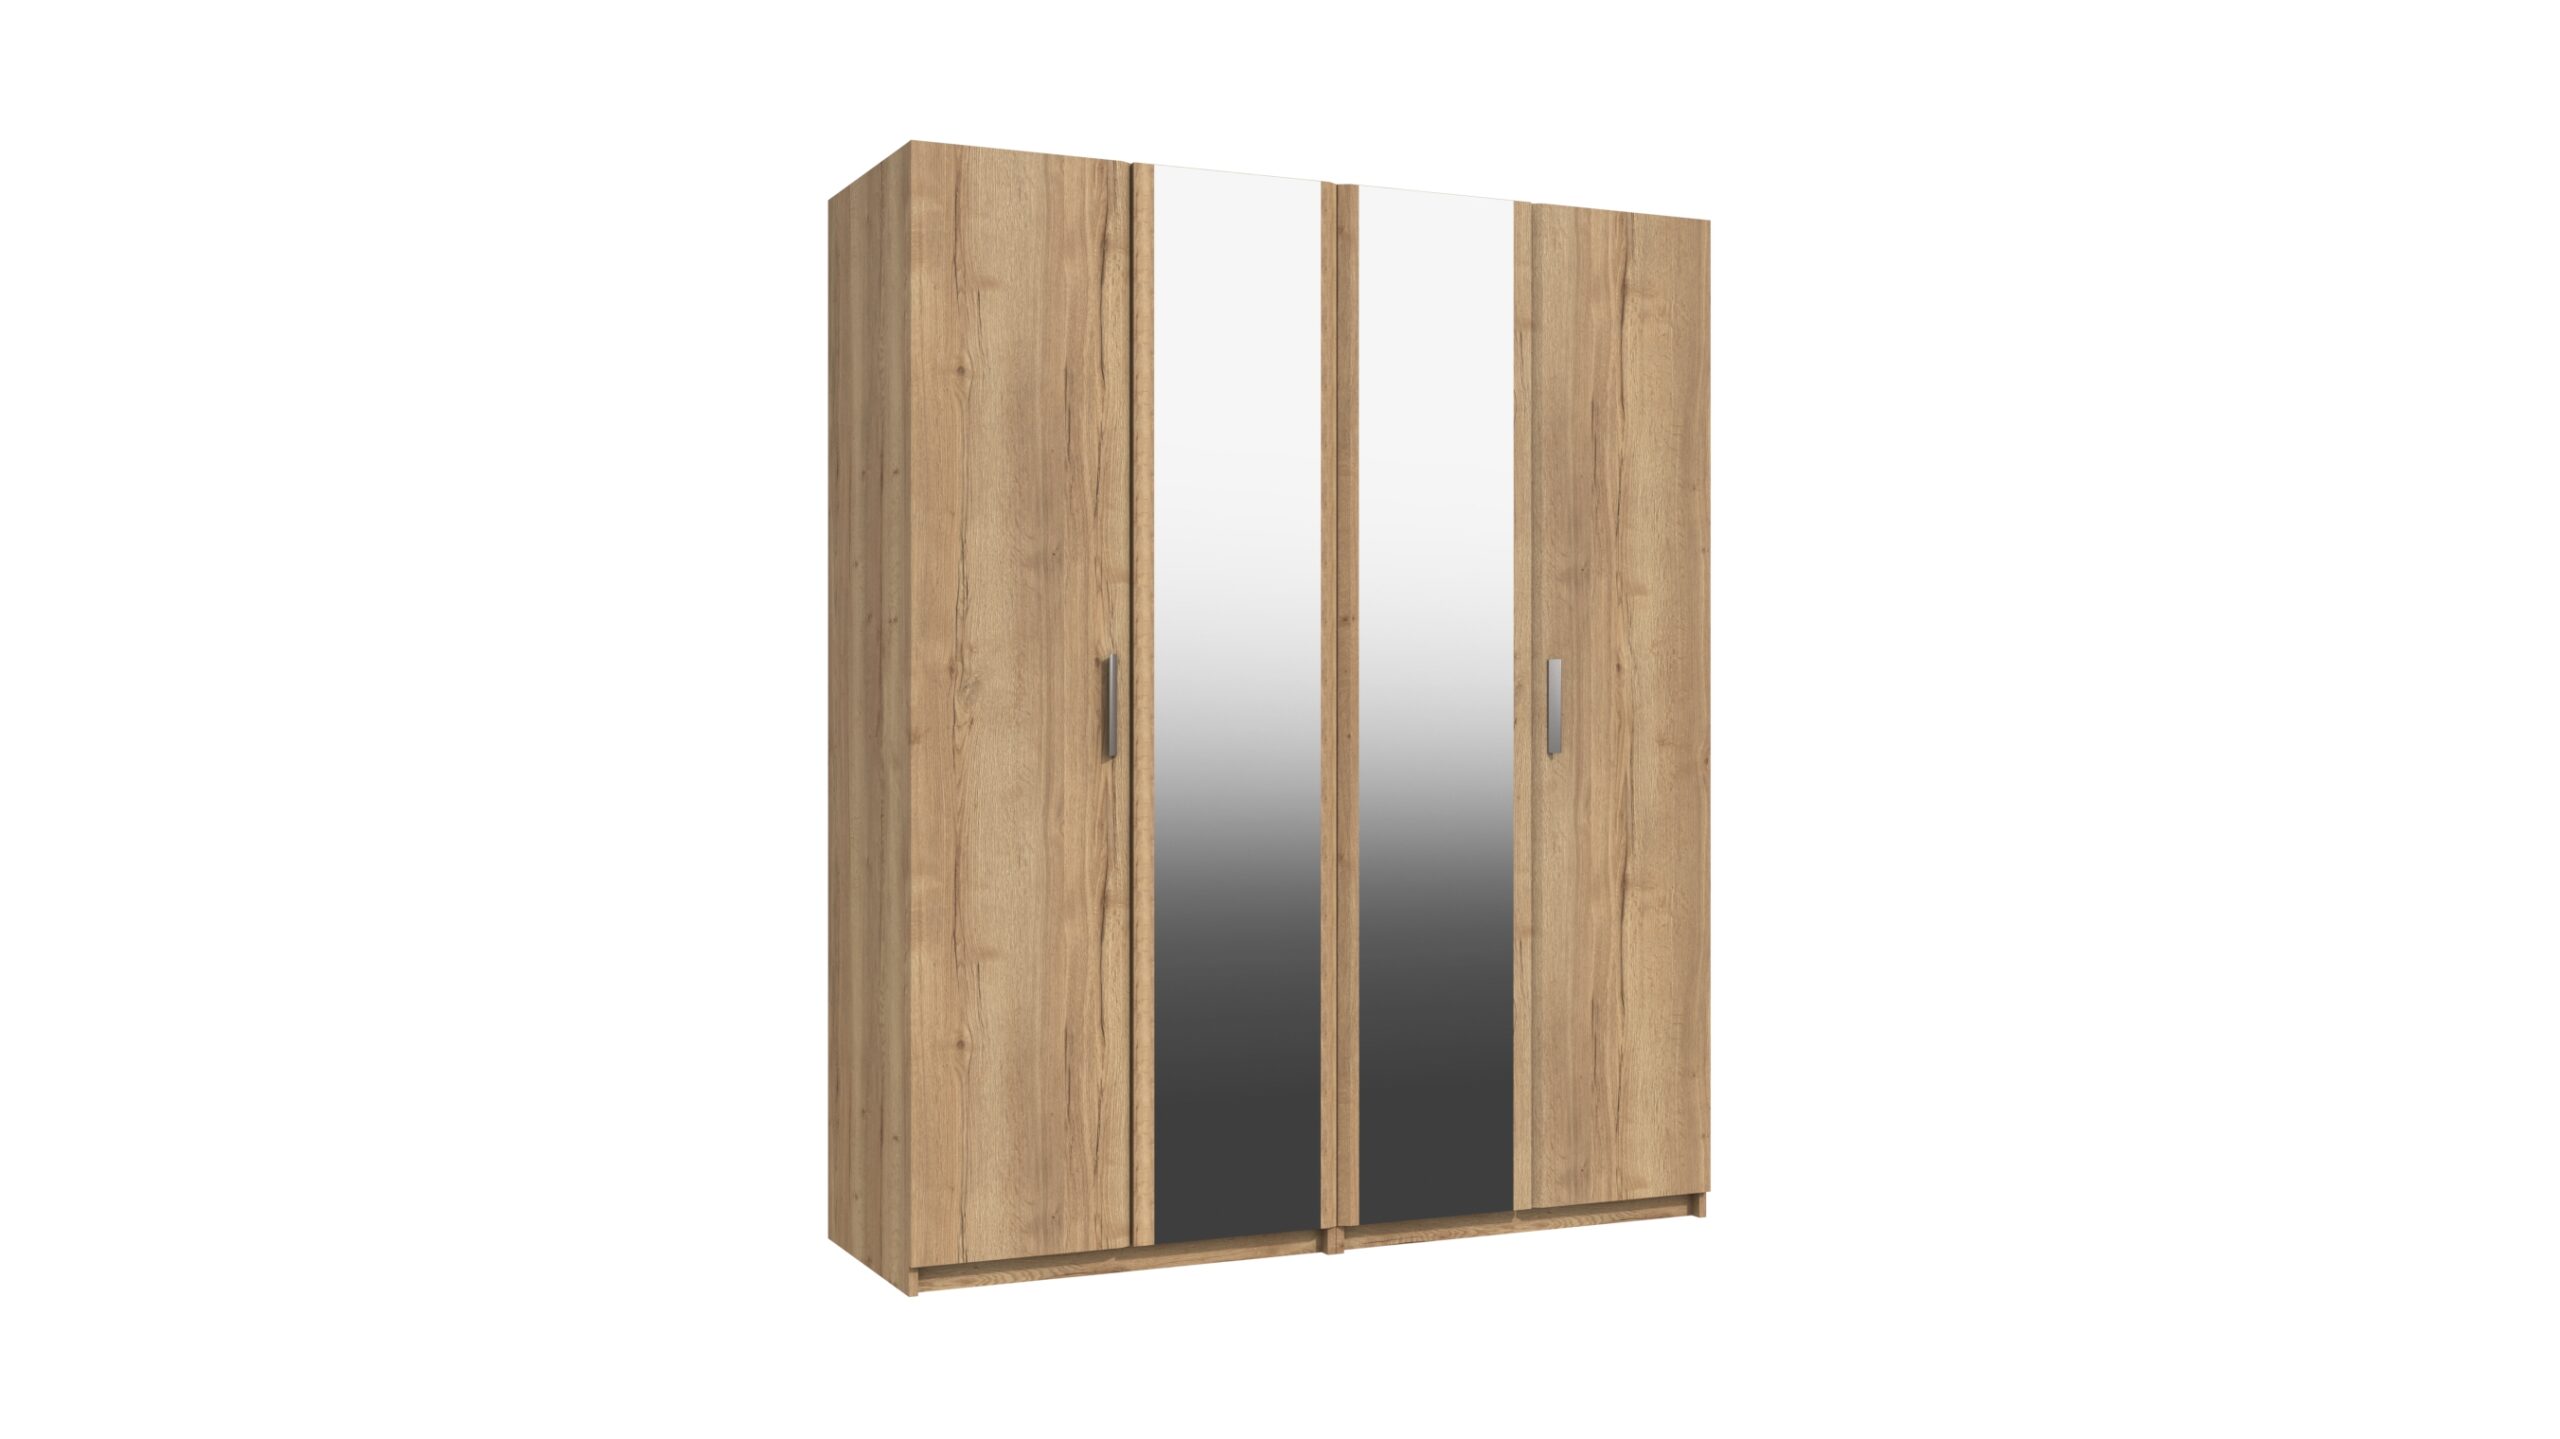 Wister Four Door Mirror Wardrobe - Rustic Oak